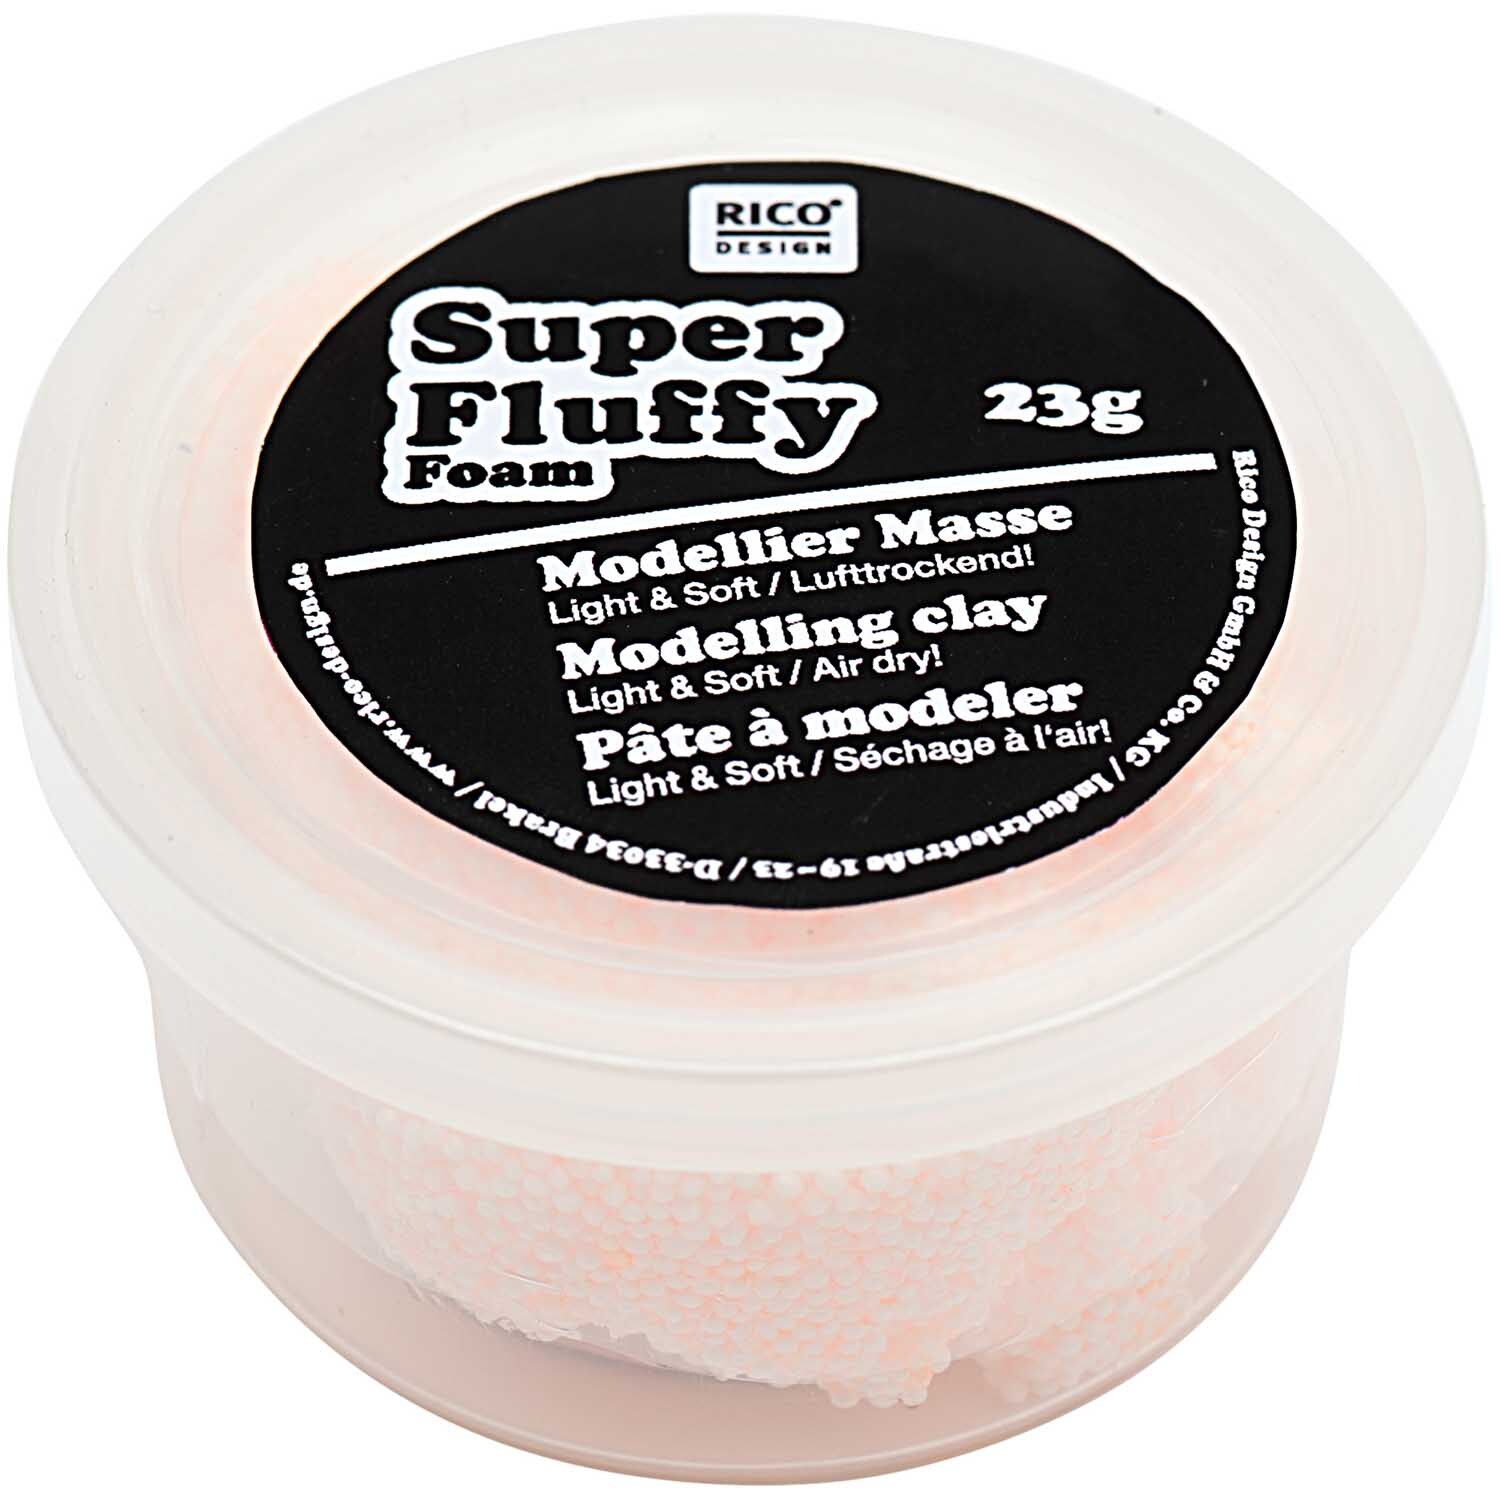 Super Fluffy Foam 23g